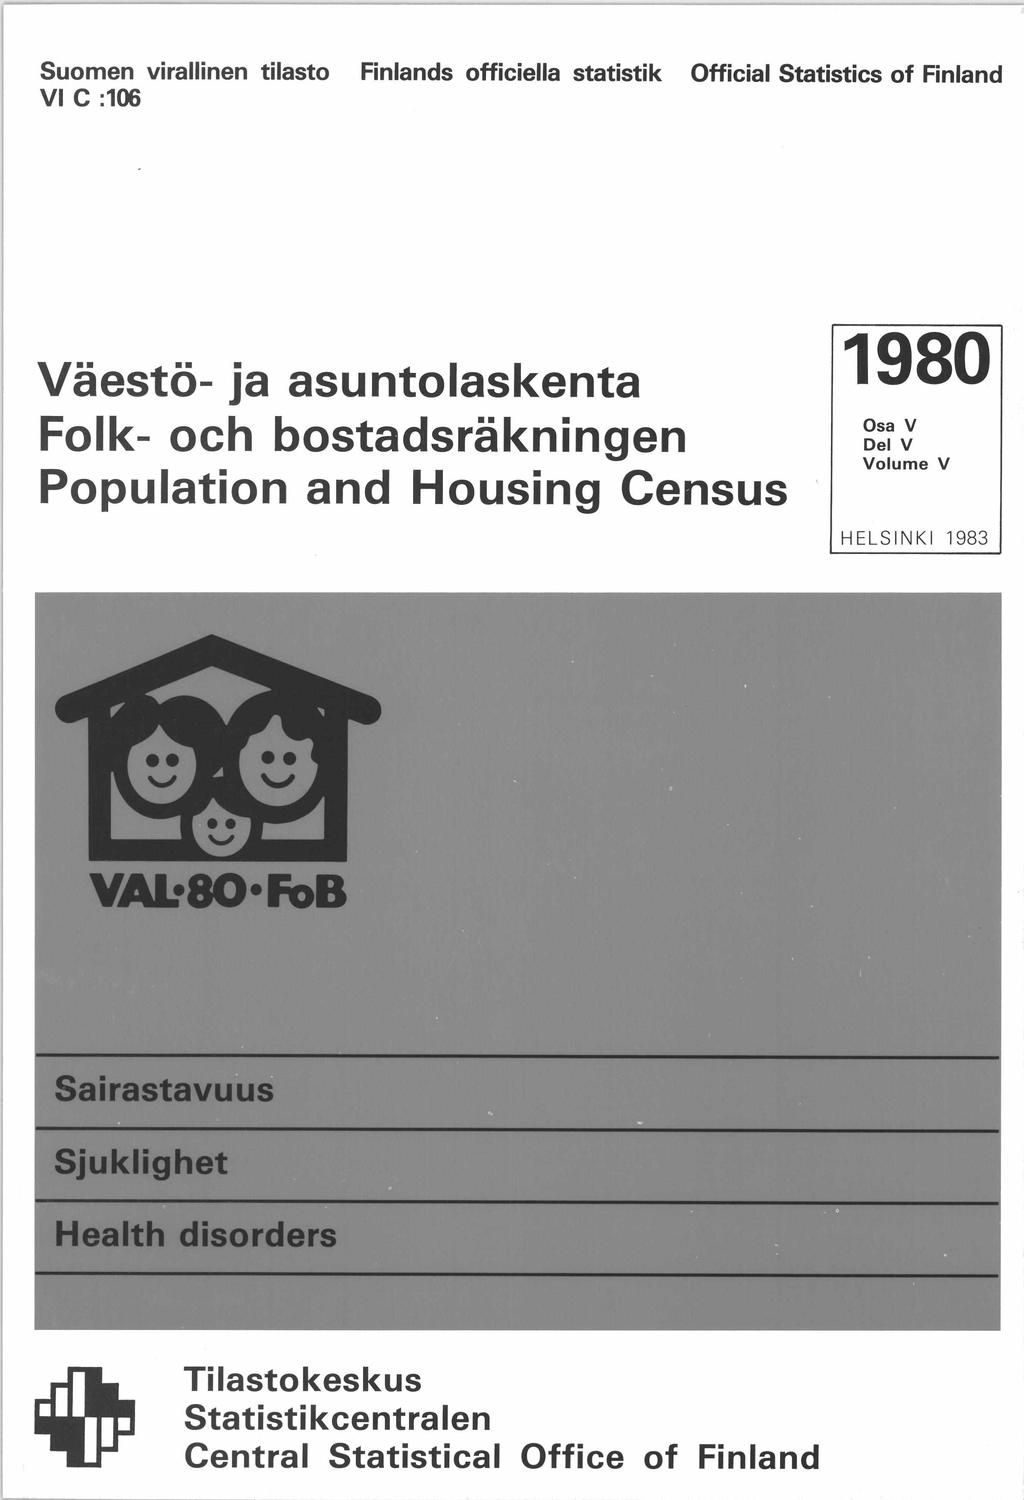 Suomen virallinen tilasto Finlands officiella statistik Official Statistics of Finland VI C :106 Väestö- ja asuntolaskenta Folk- och bostadsräkningen Population and